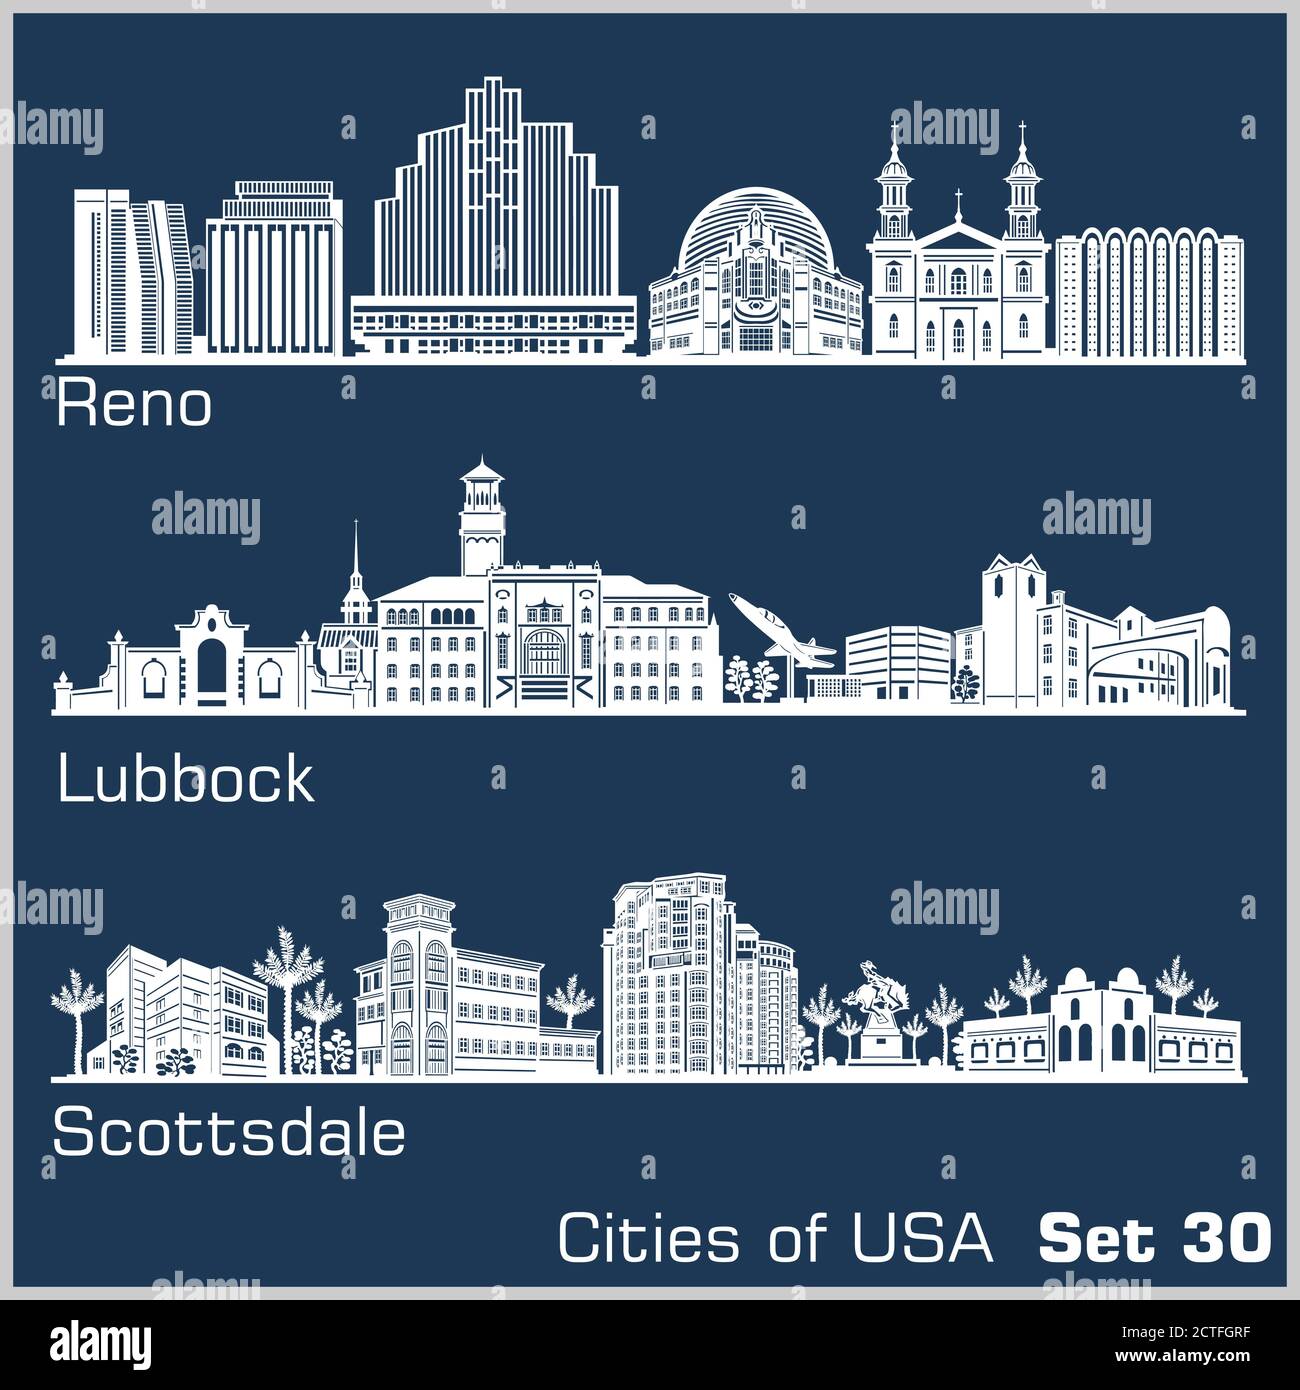 Città degli Stati Uniti - Reno, Lubbock, Scottsdale. Architettura dettagliata. Illustrazione vettoriale alla moda. Illustrazione Vettoriale